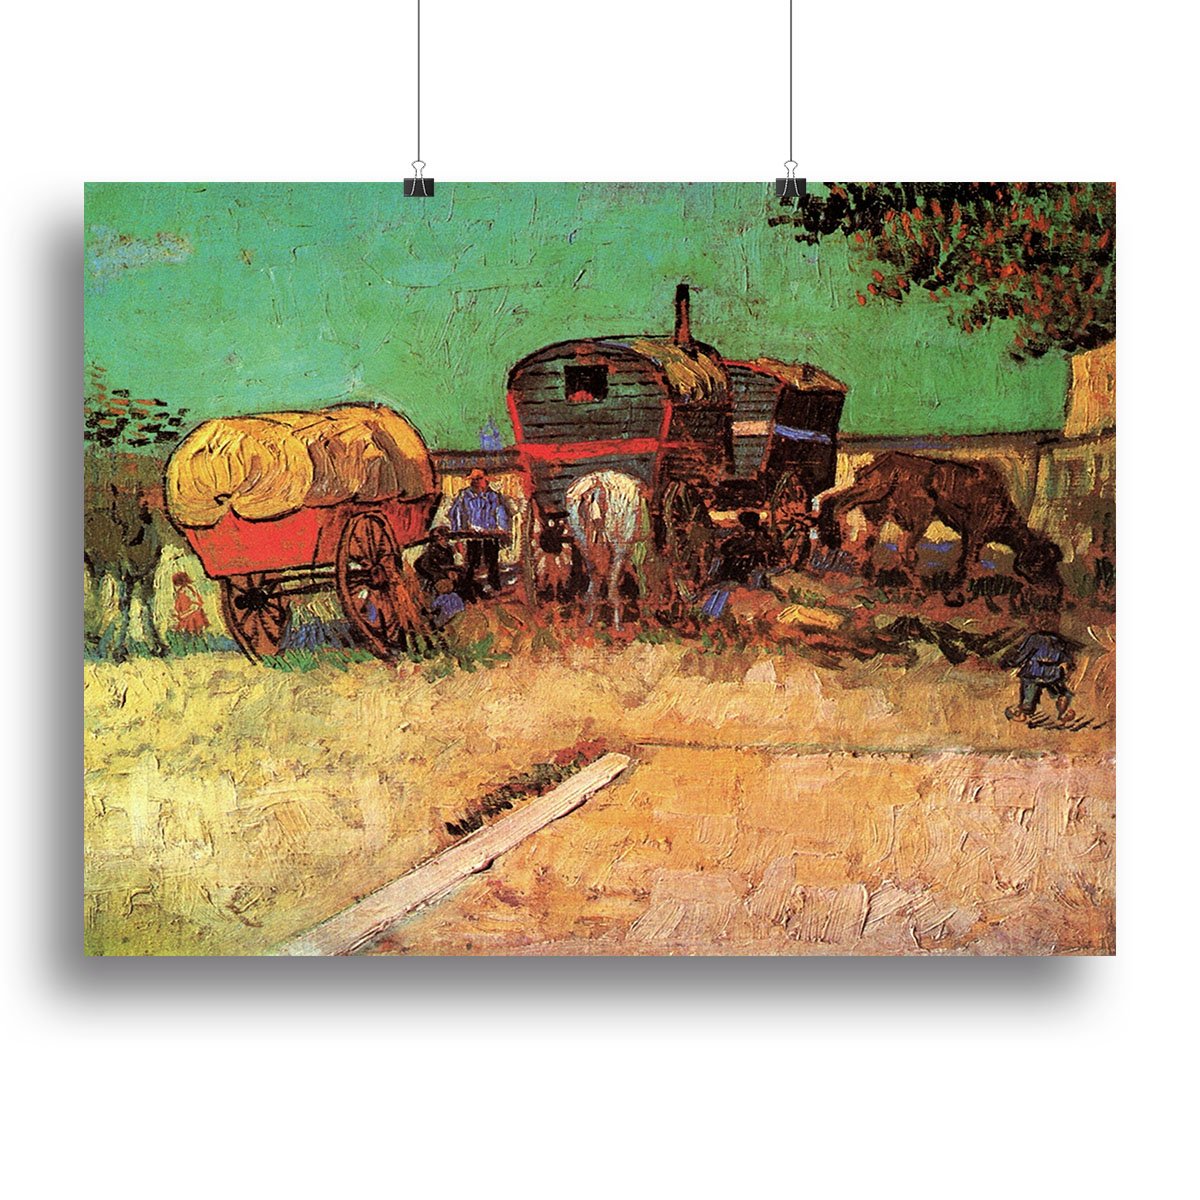 Encampment of Gypsies with Caravans by Van Gogh Canvas Print or Poster